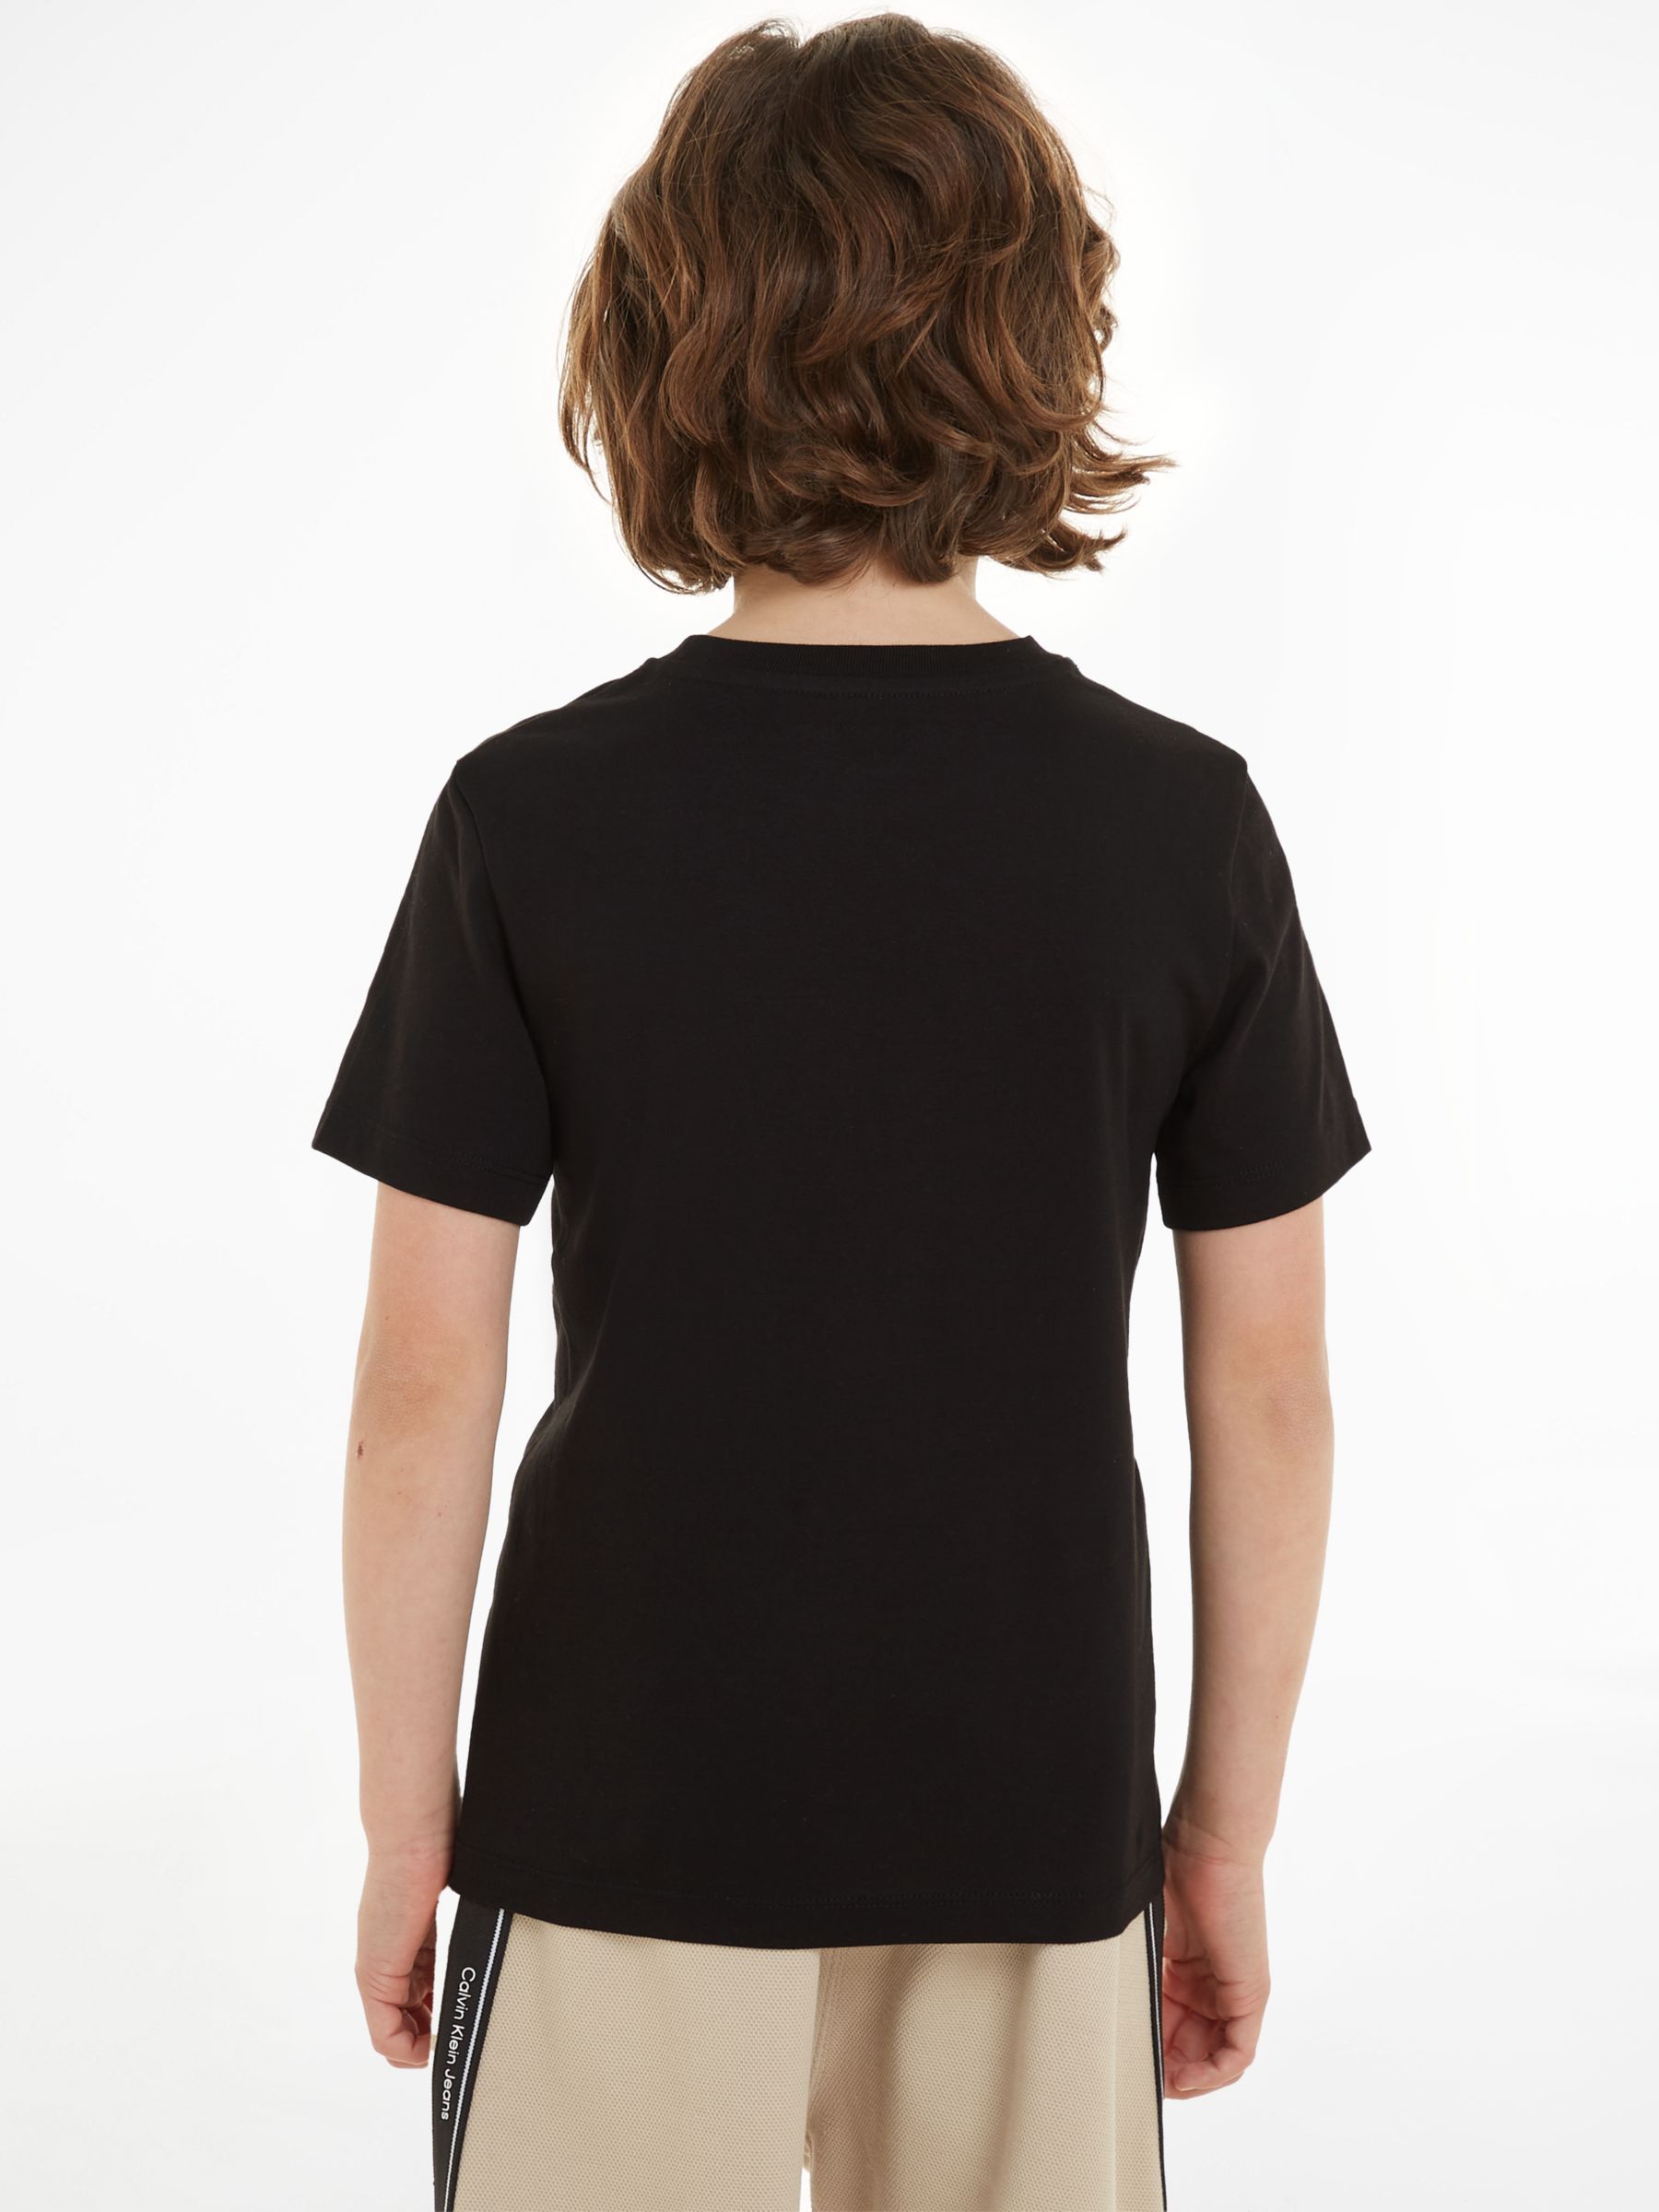 Calvin Klein Kids' Cotton Monogram Short Sleeve T-Shirts, Pack of 2, Keepsake  Blue/Ck Black at John Lewis & Partners